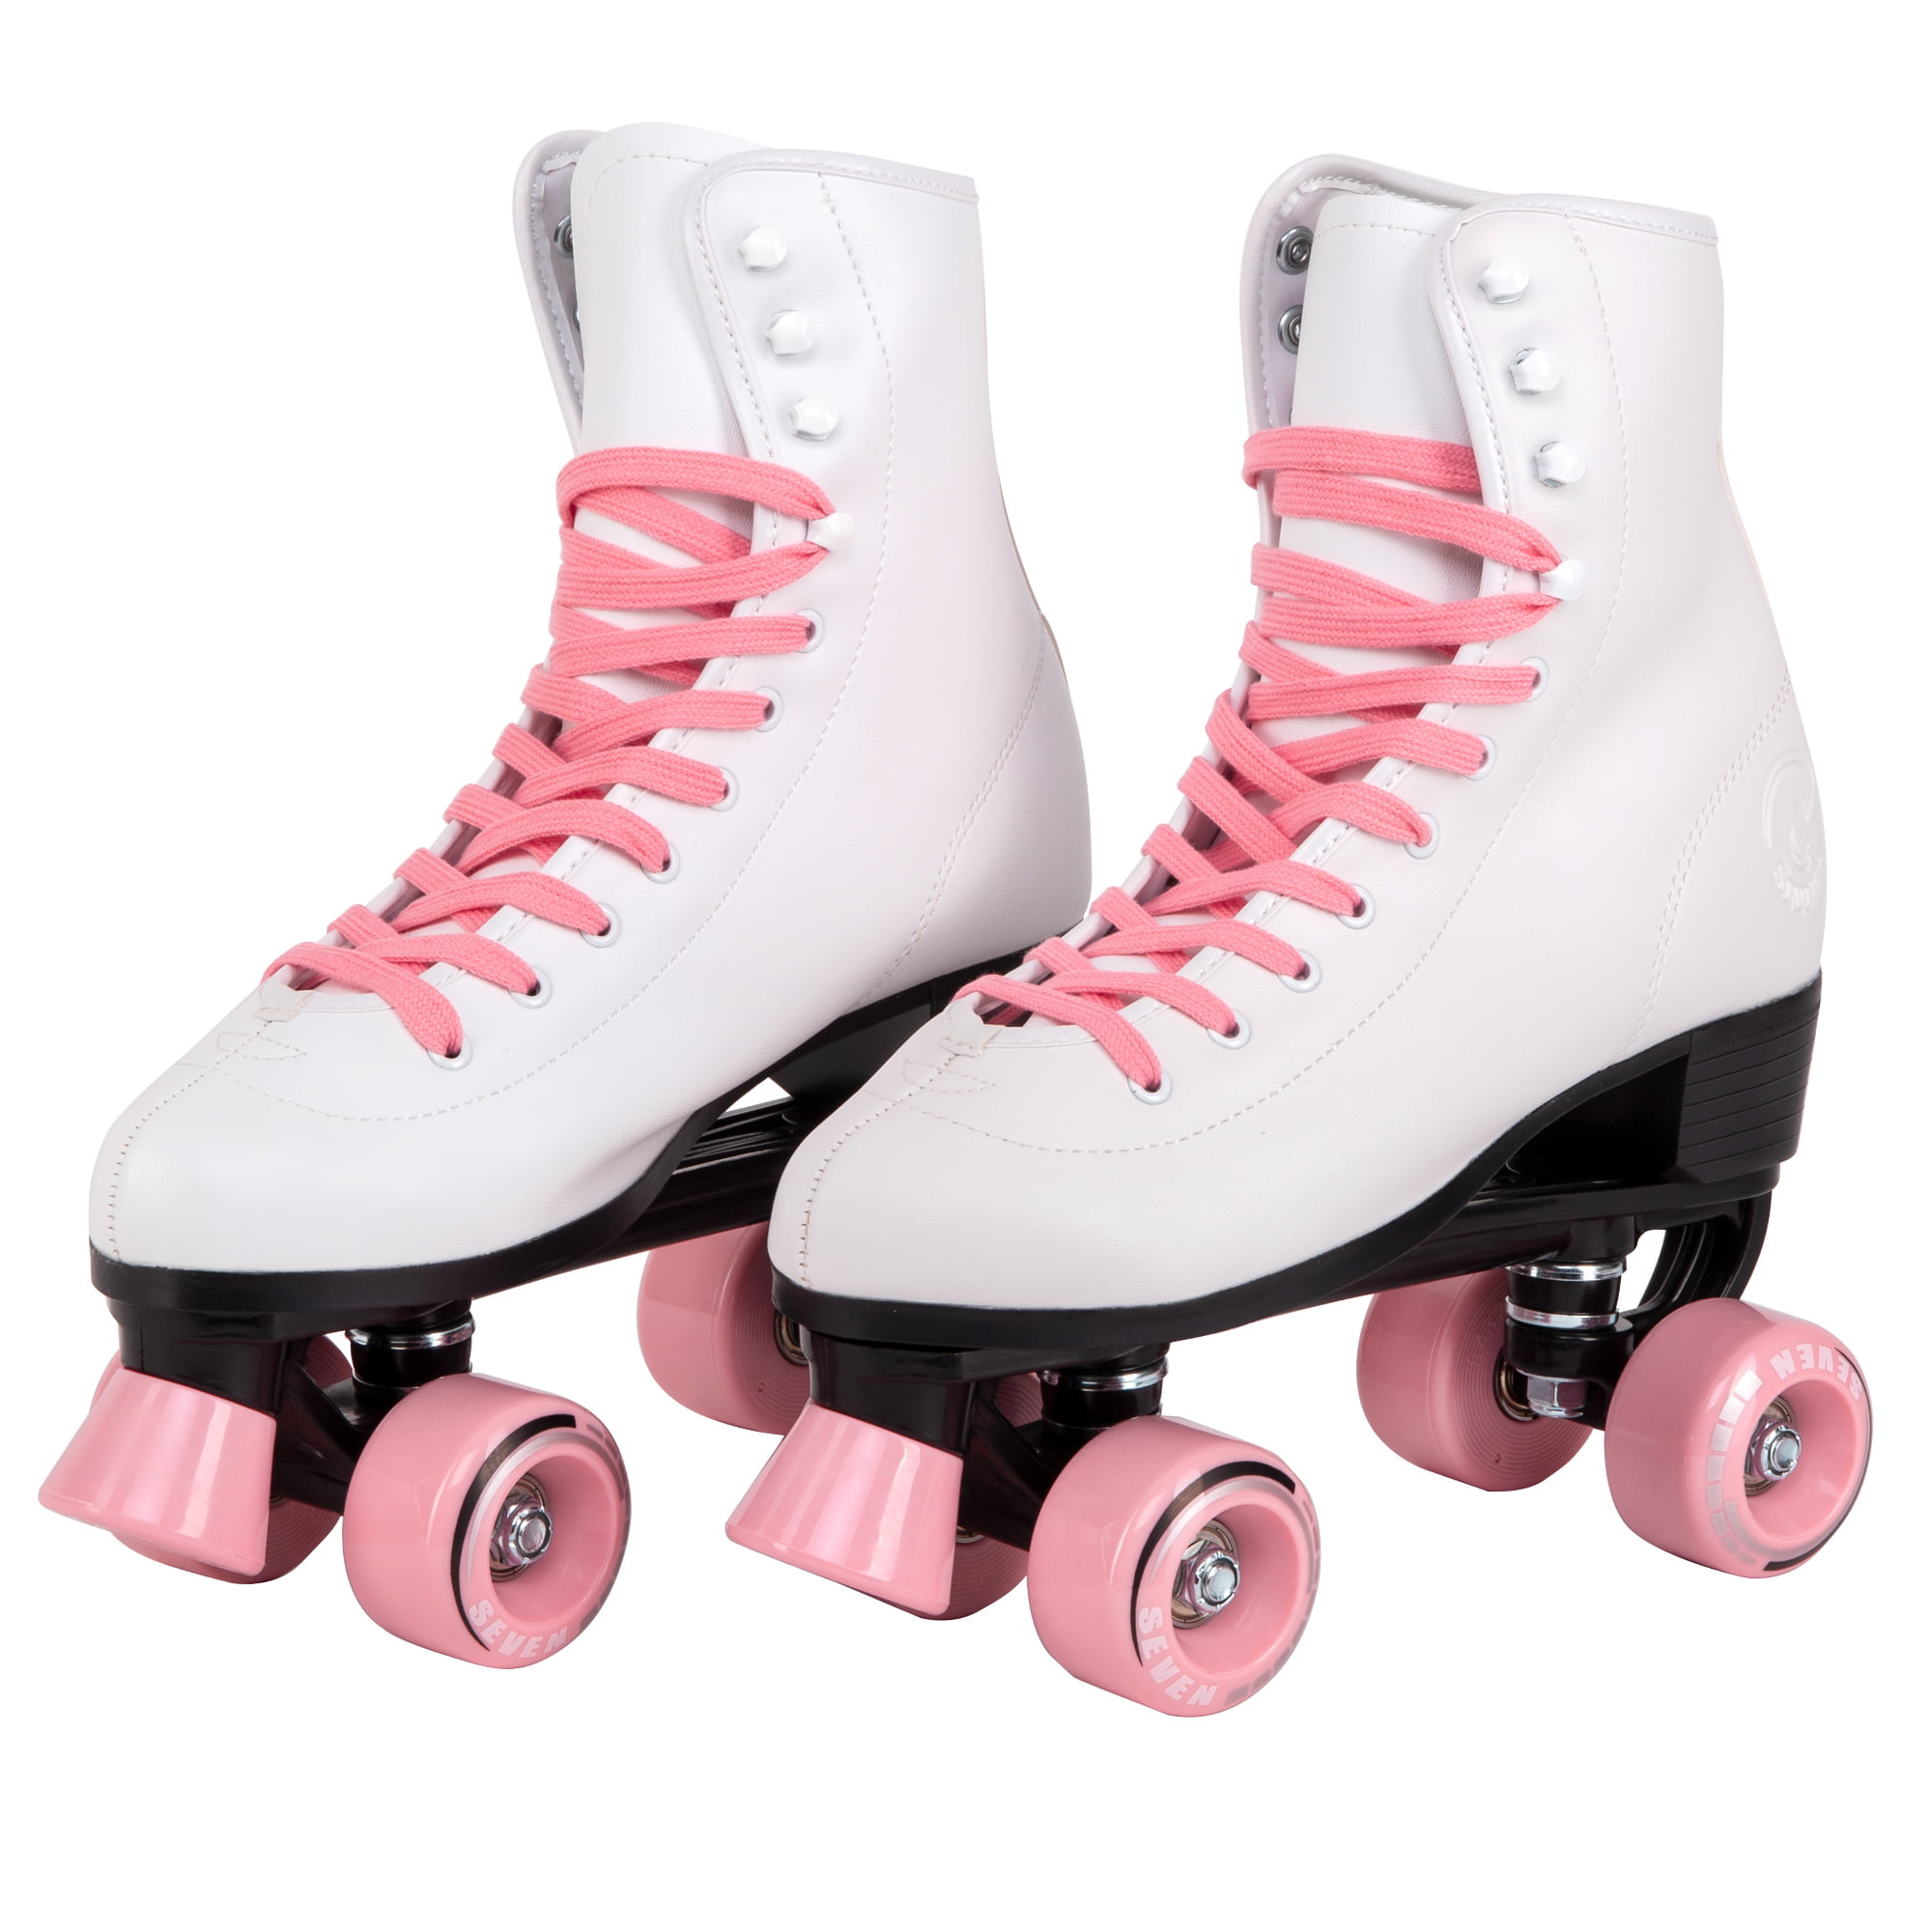 Pink/Hot Pink & White  Roller Skates Pair of Women size 7 Heel to toe 9 1/ 2n 